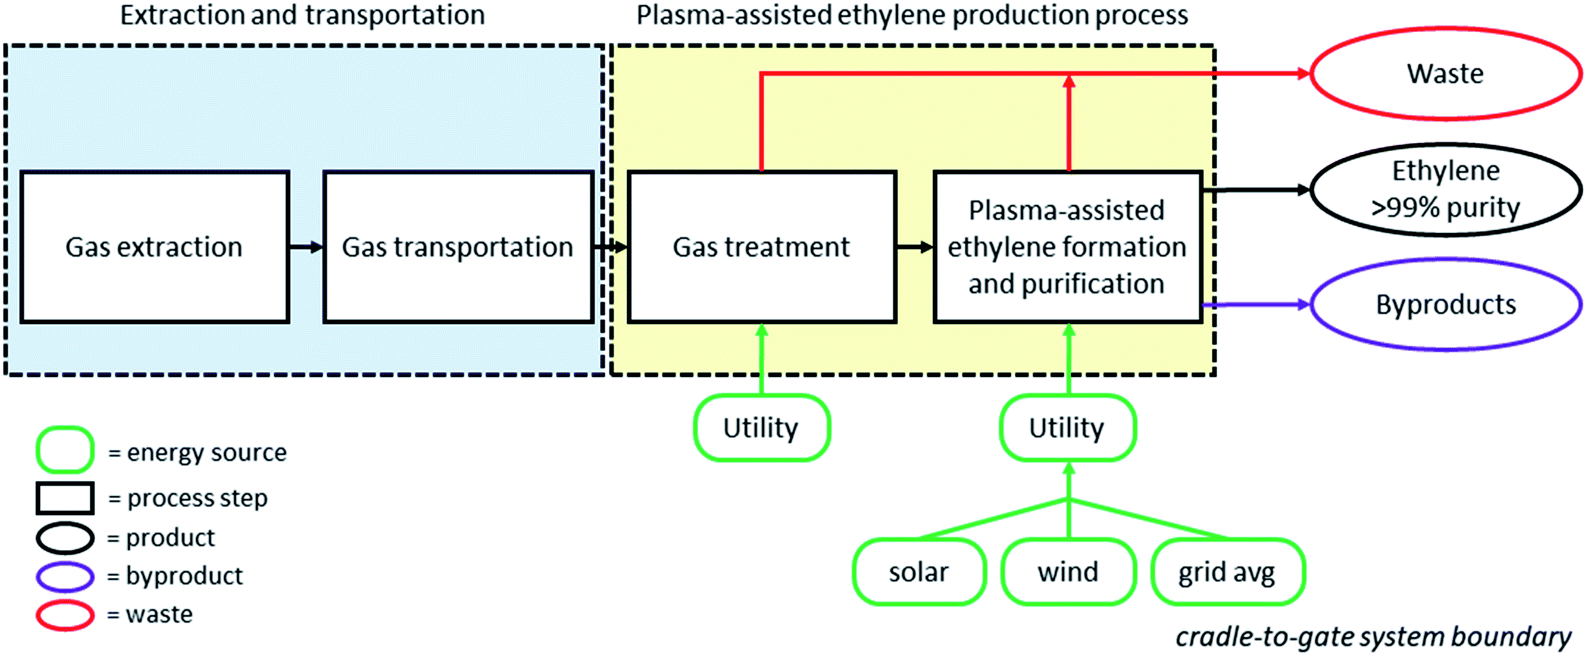 ethylene production